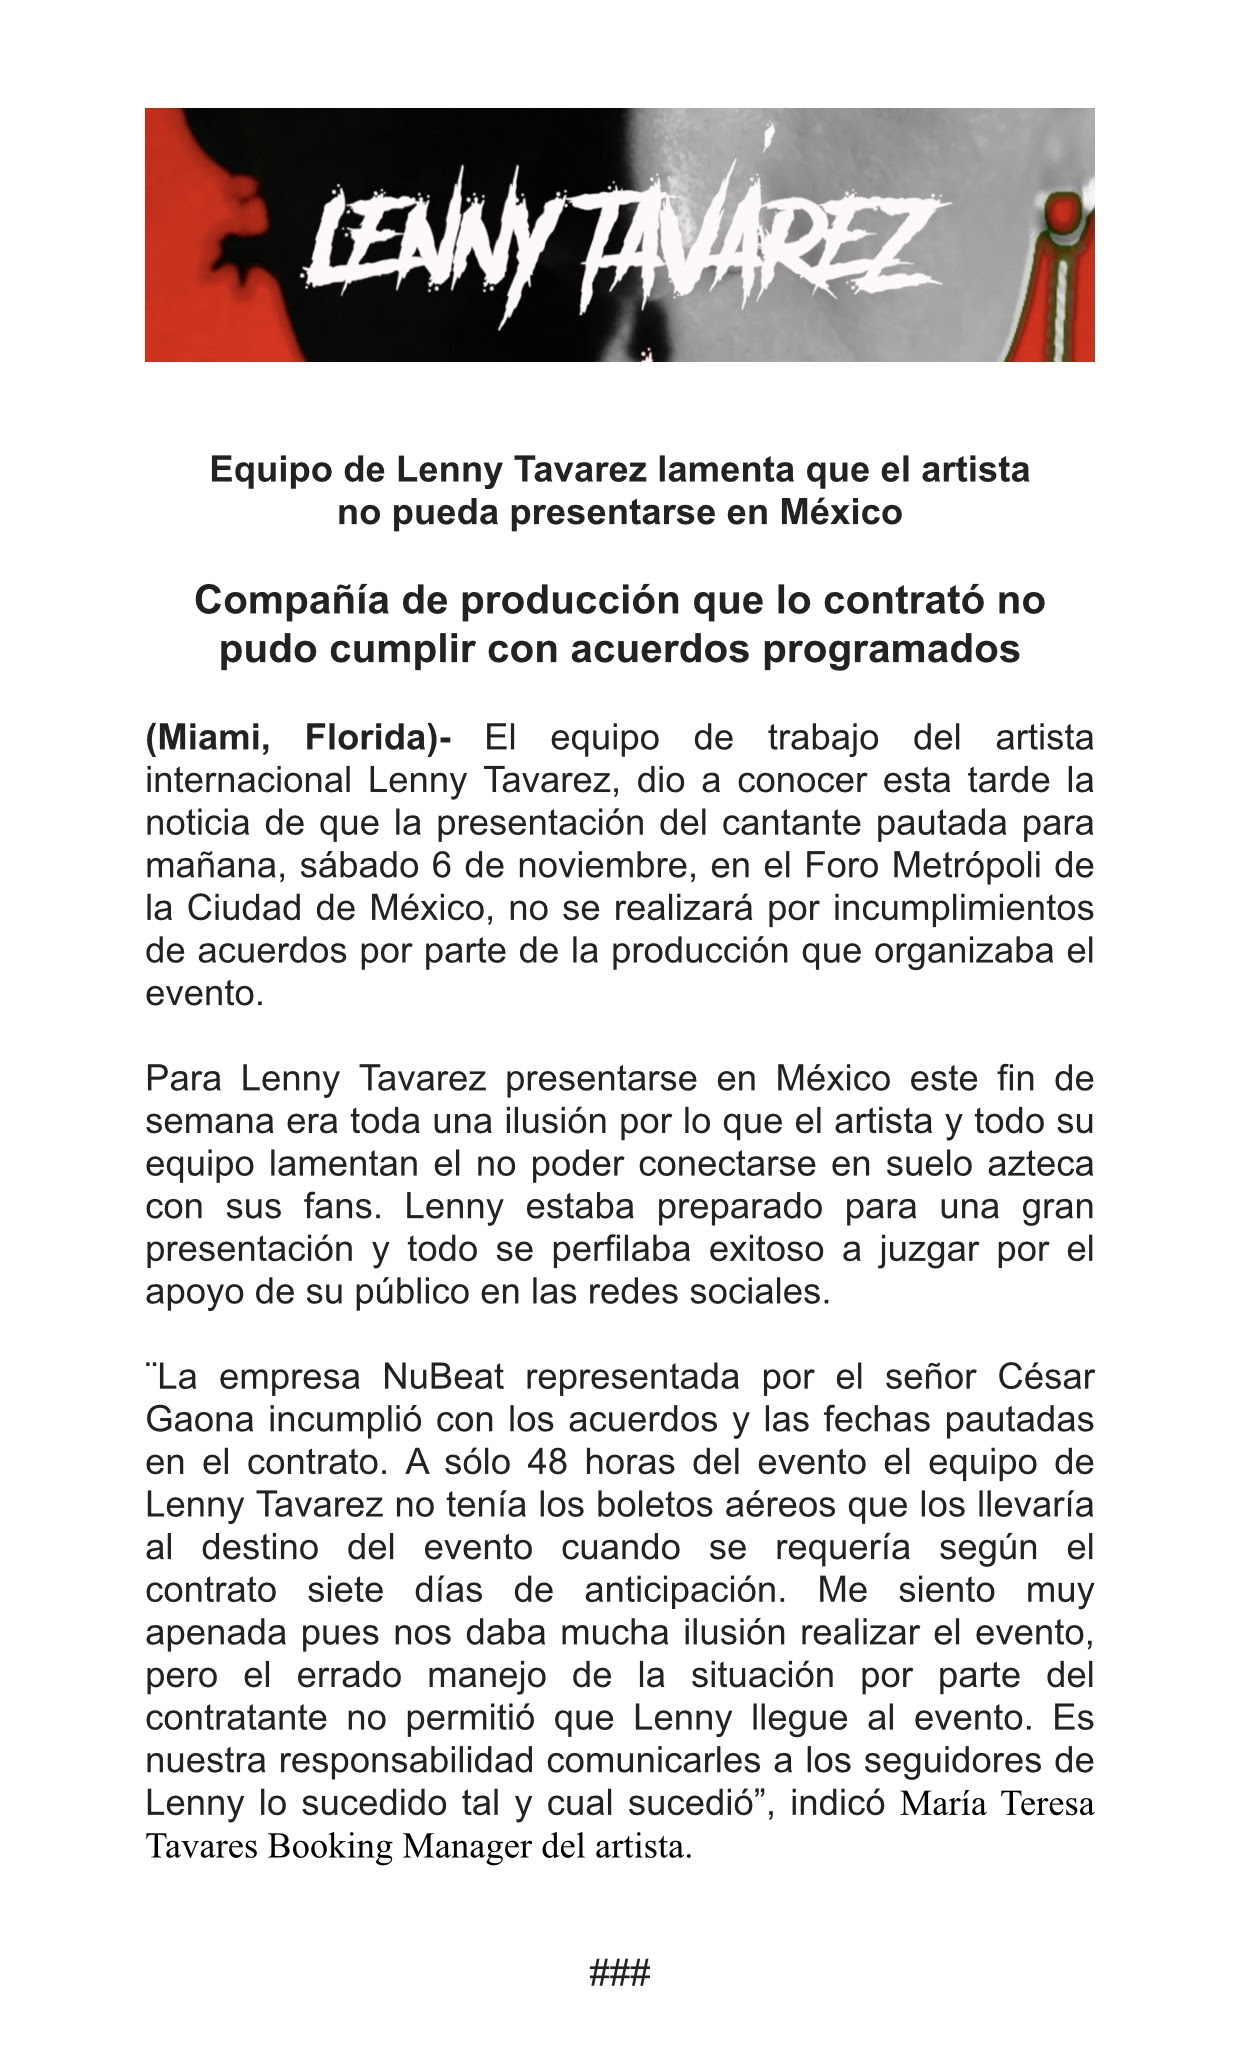 Equipo de Lenny Tavarez lamenta que el artista no pueda presentarse en México